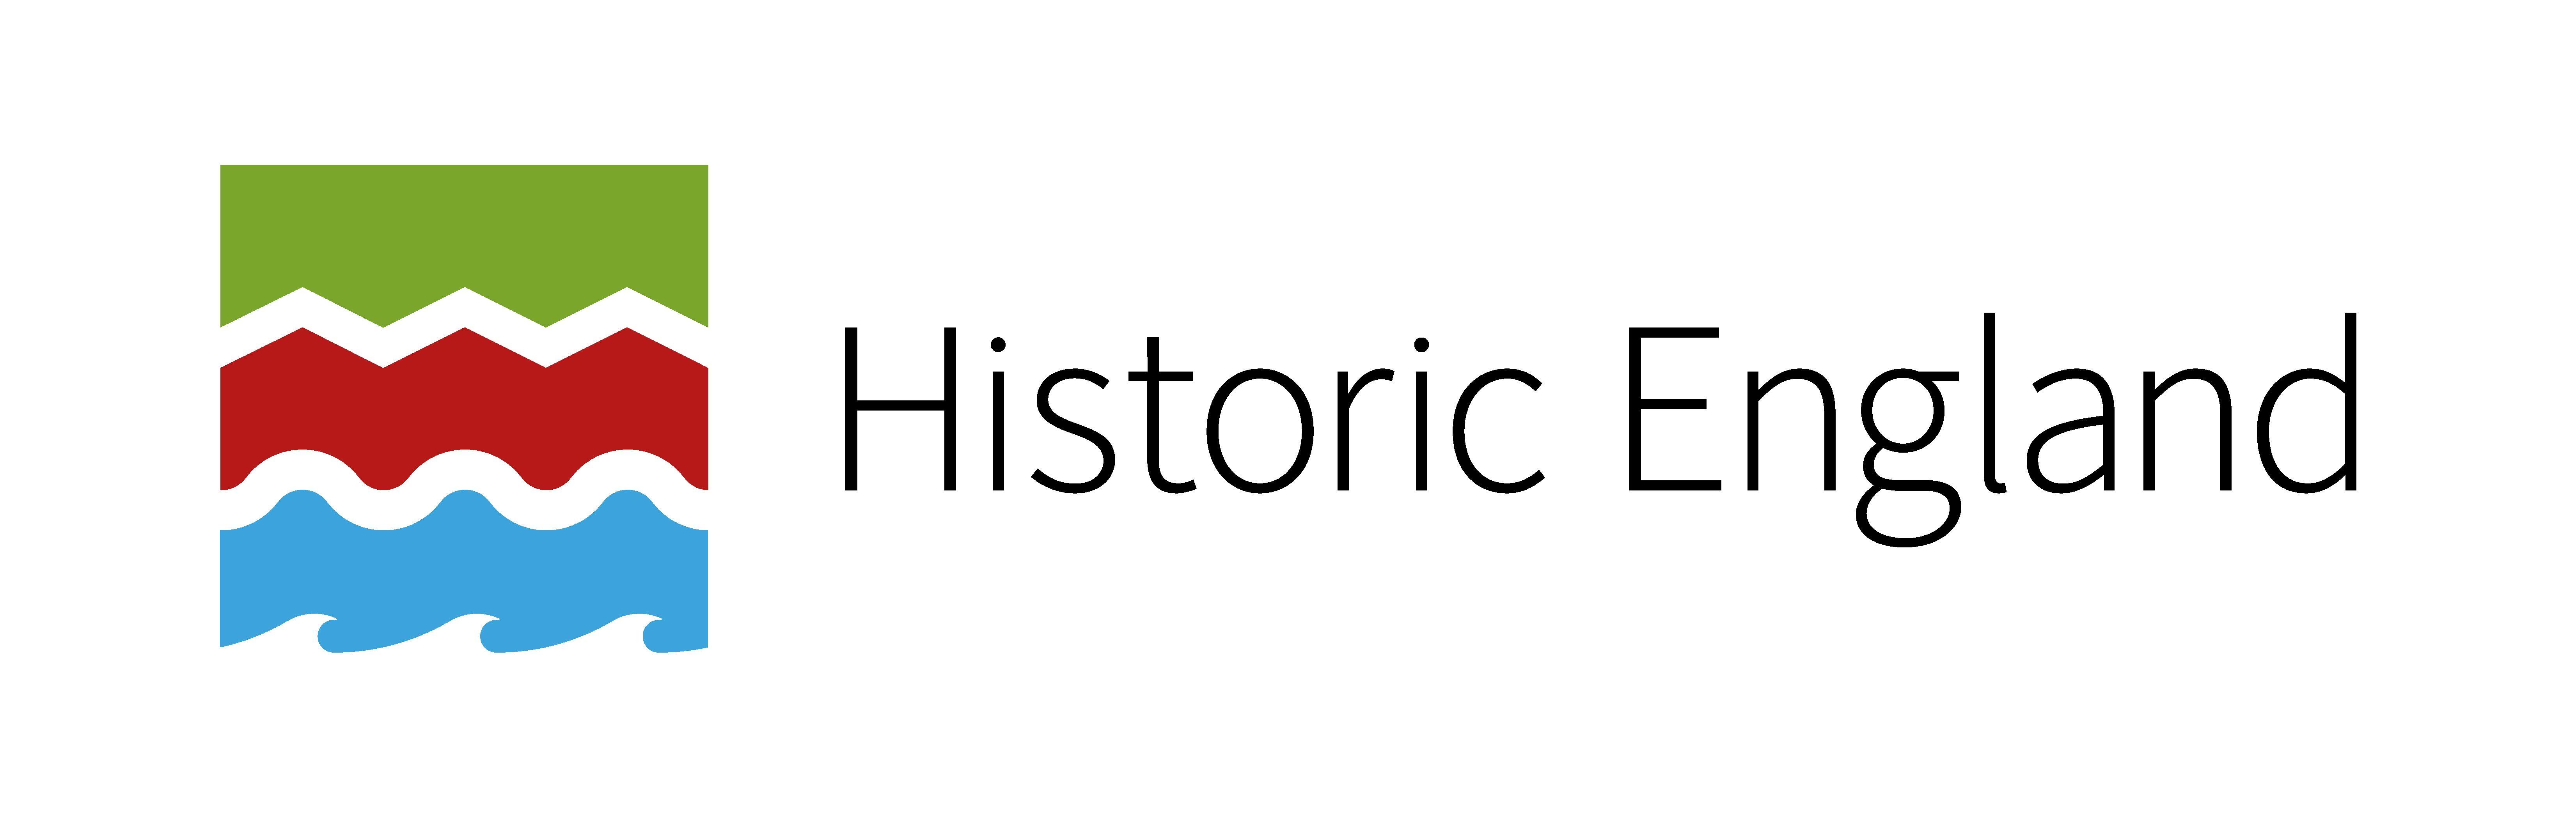 England Logo - Historic England logo